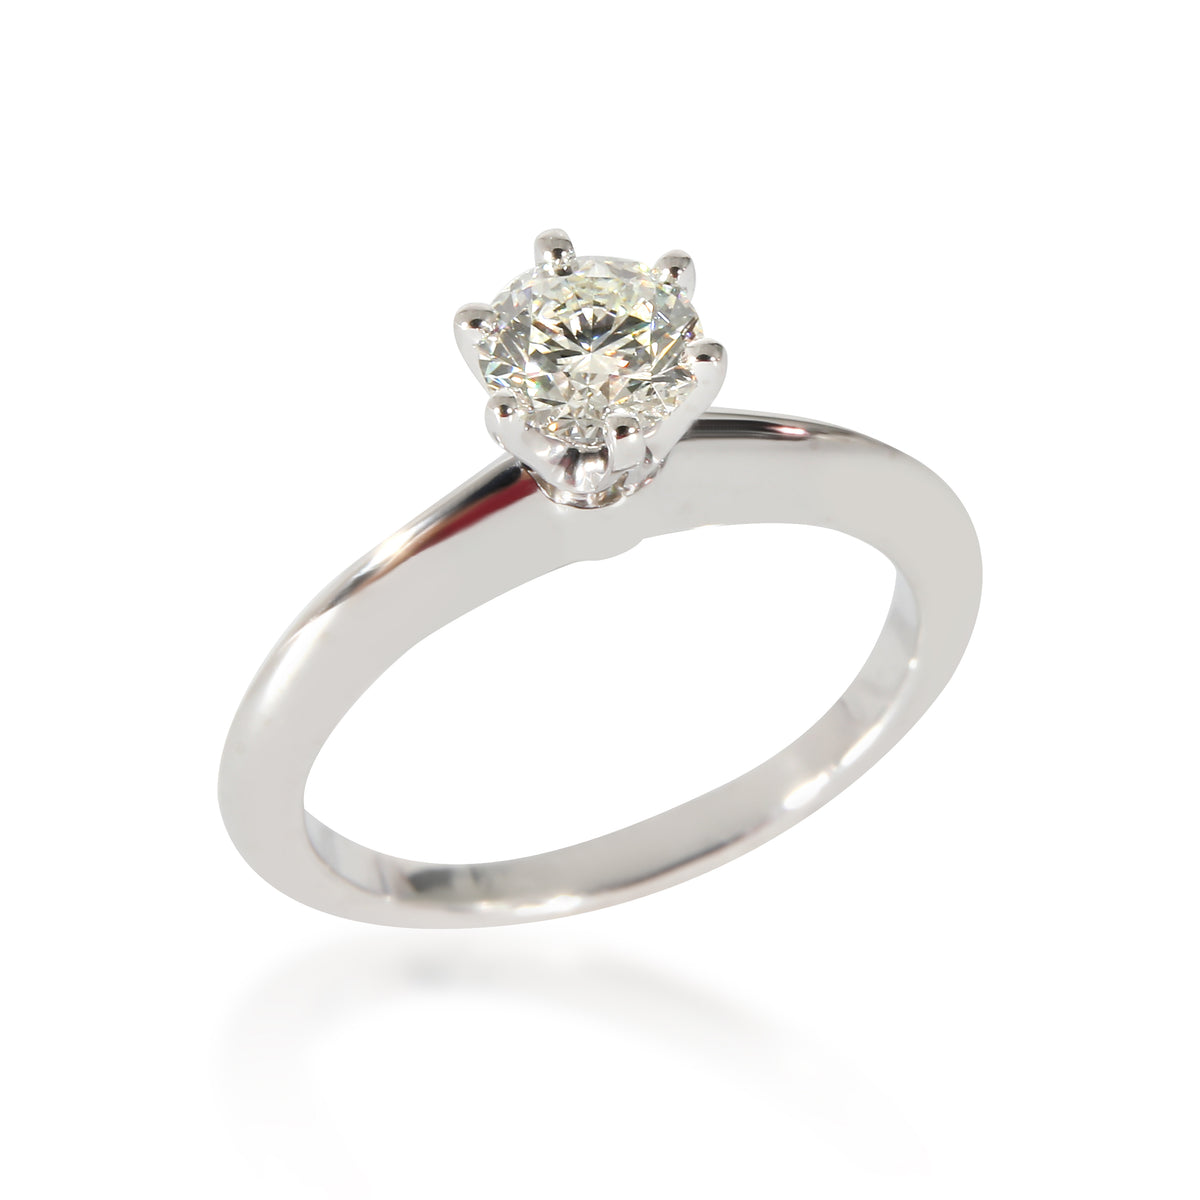 Solitaire Engagement Ring In Platinum .40 CTW.